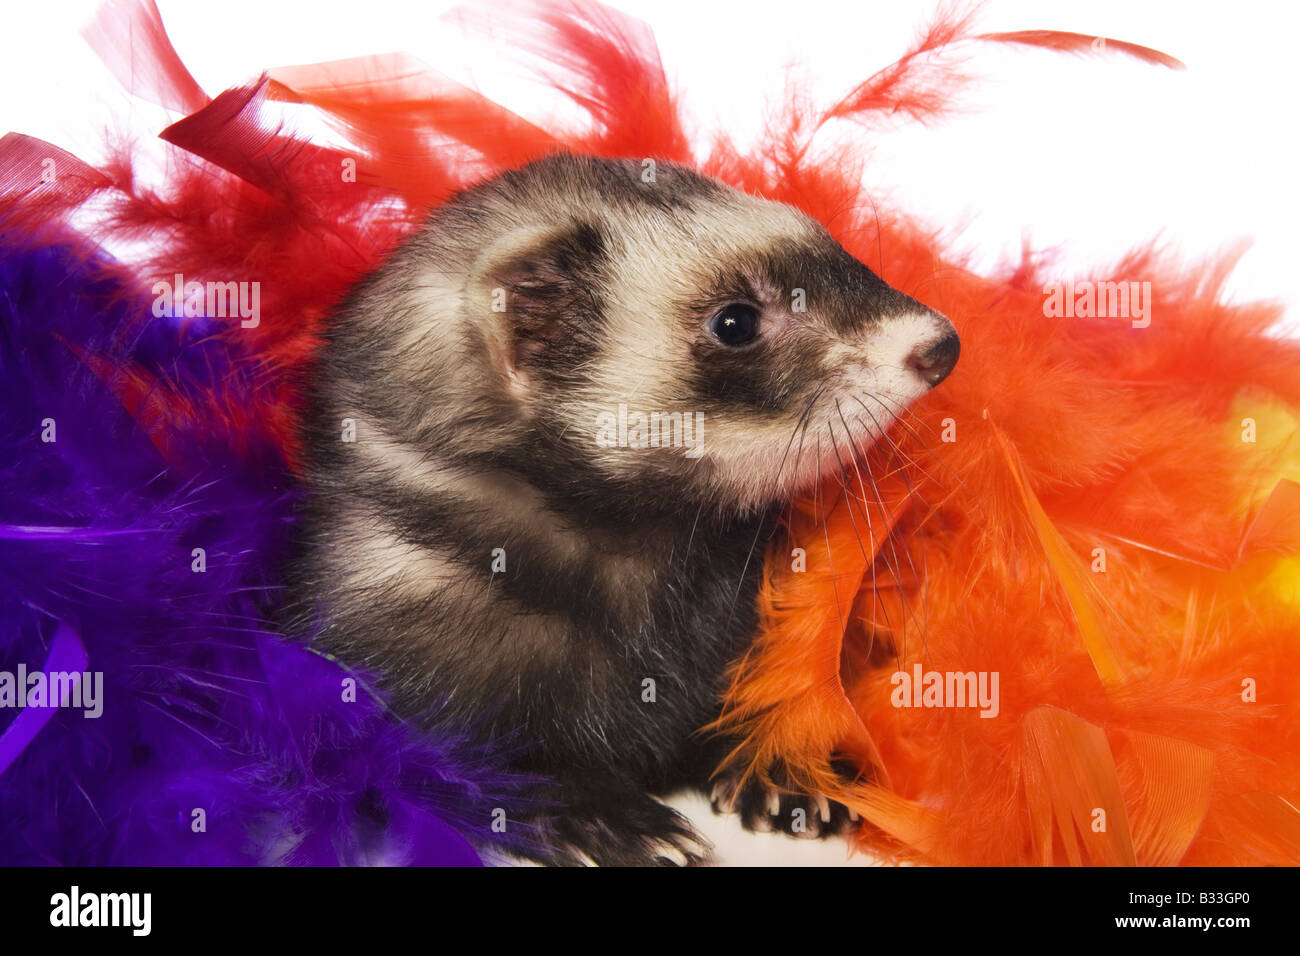 Carino sable ferret in colorate piume isolati su sfondo bianco Foto Stock